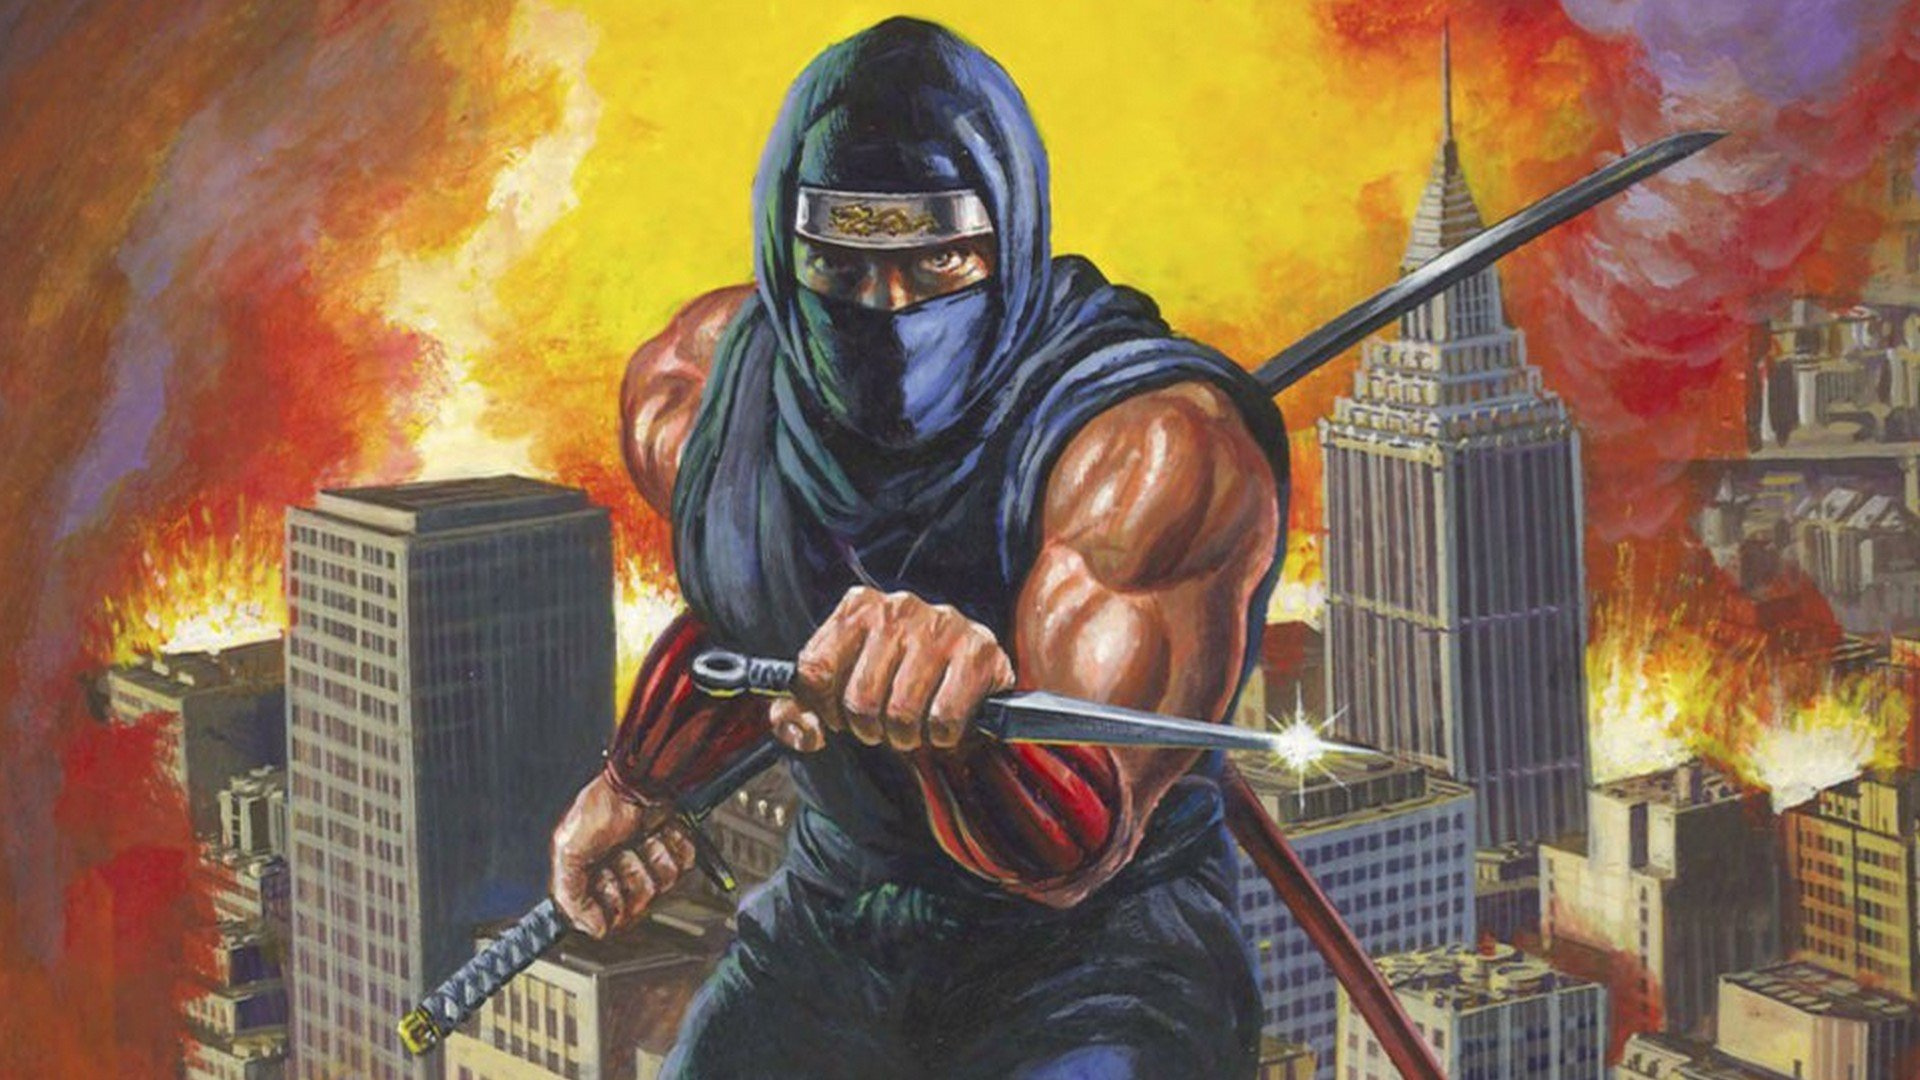 The Original 1989 Arcade Release of Ninja Gaiden Is Coming